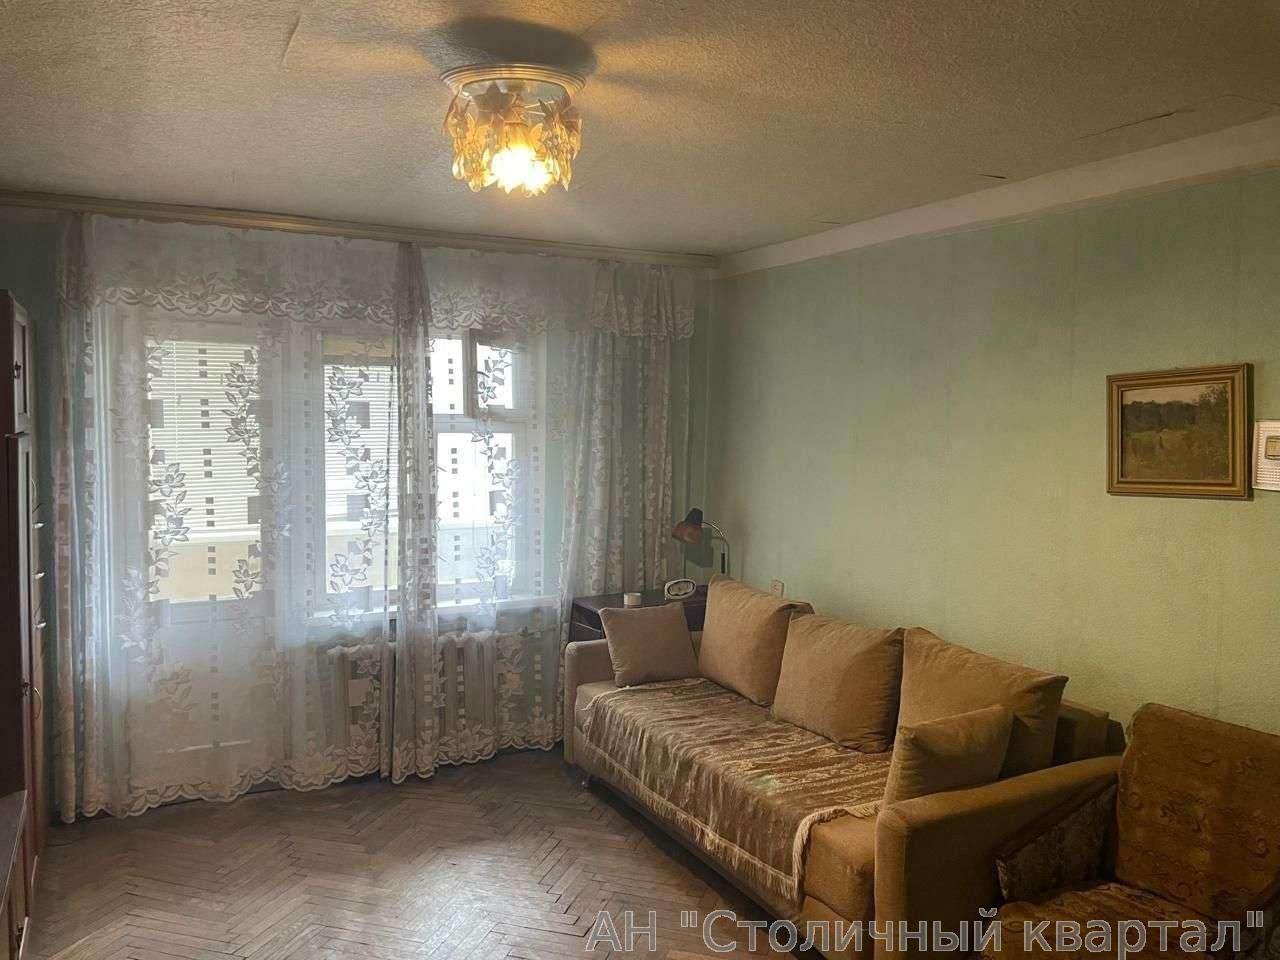 Продам квартиру Киев, Голосеевский пр-т